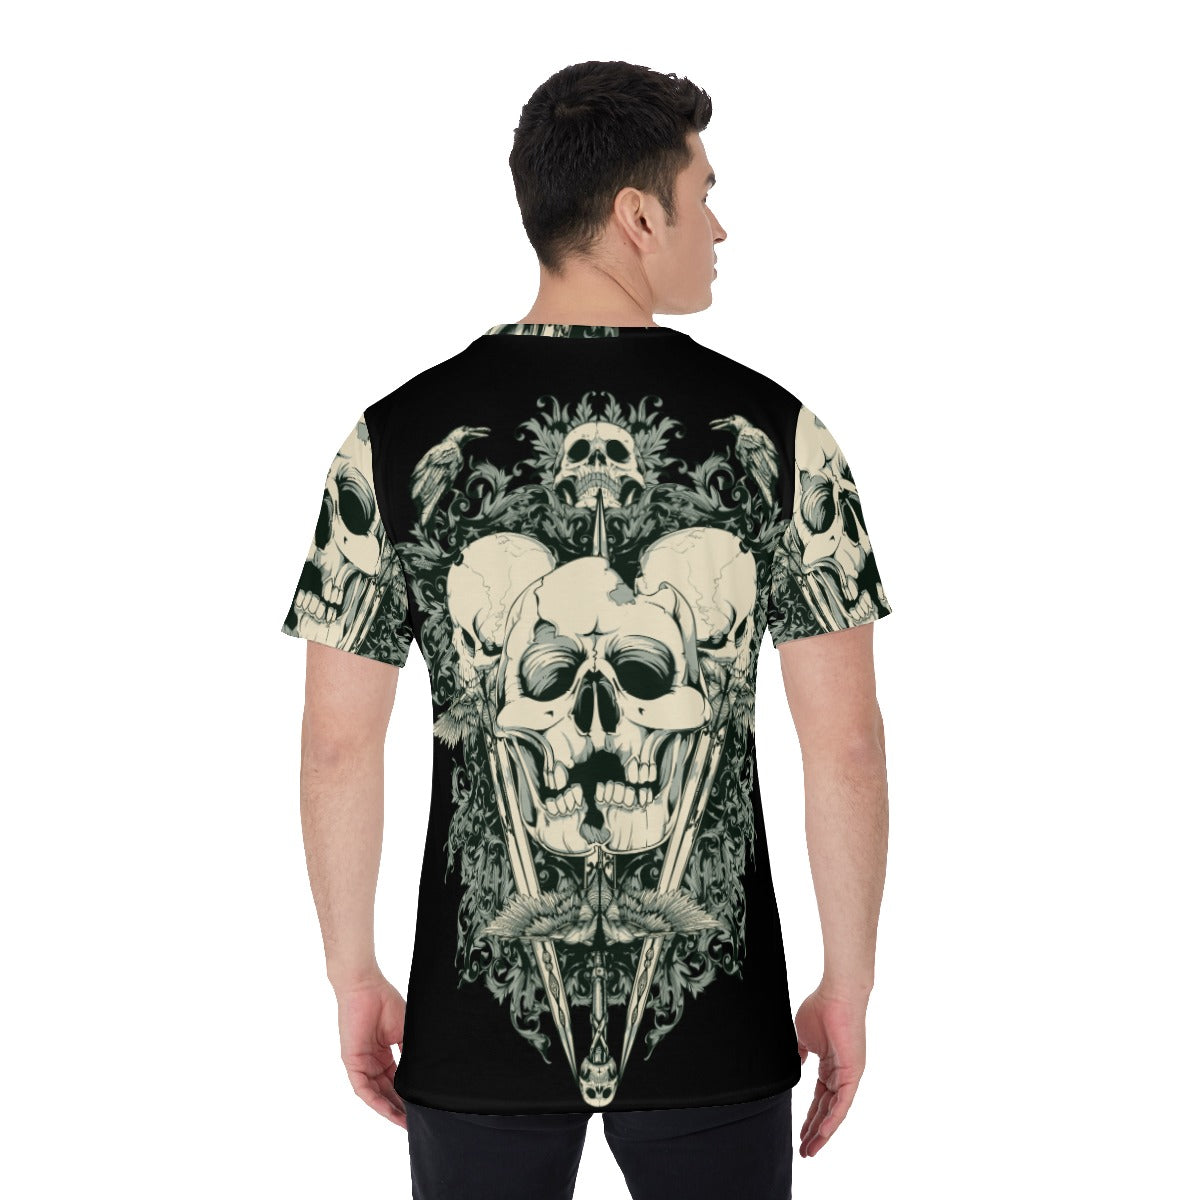 Skull evils Men's O-Neck T-Shirt, Gothic grim reaper Horror Halloween V-Neck t-shirt